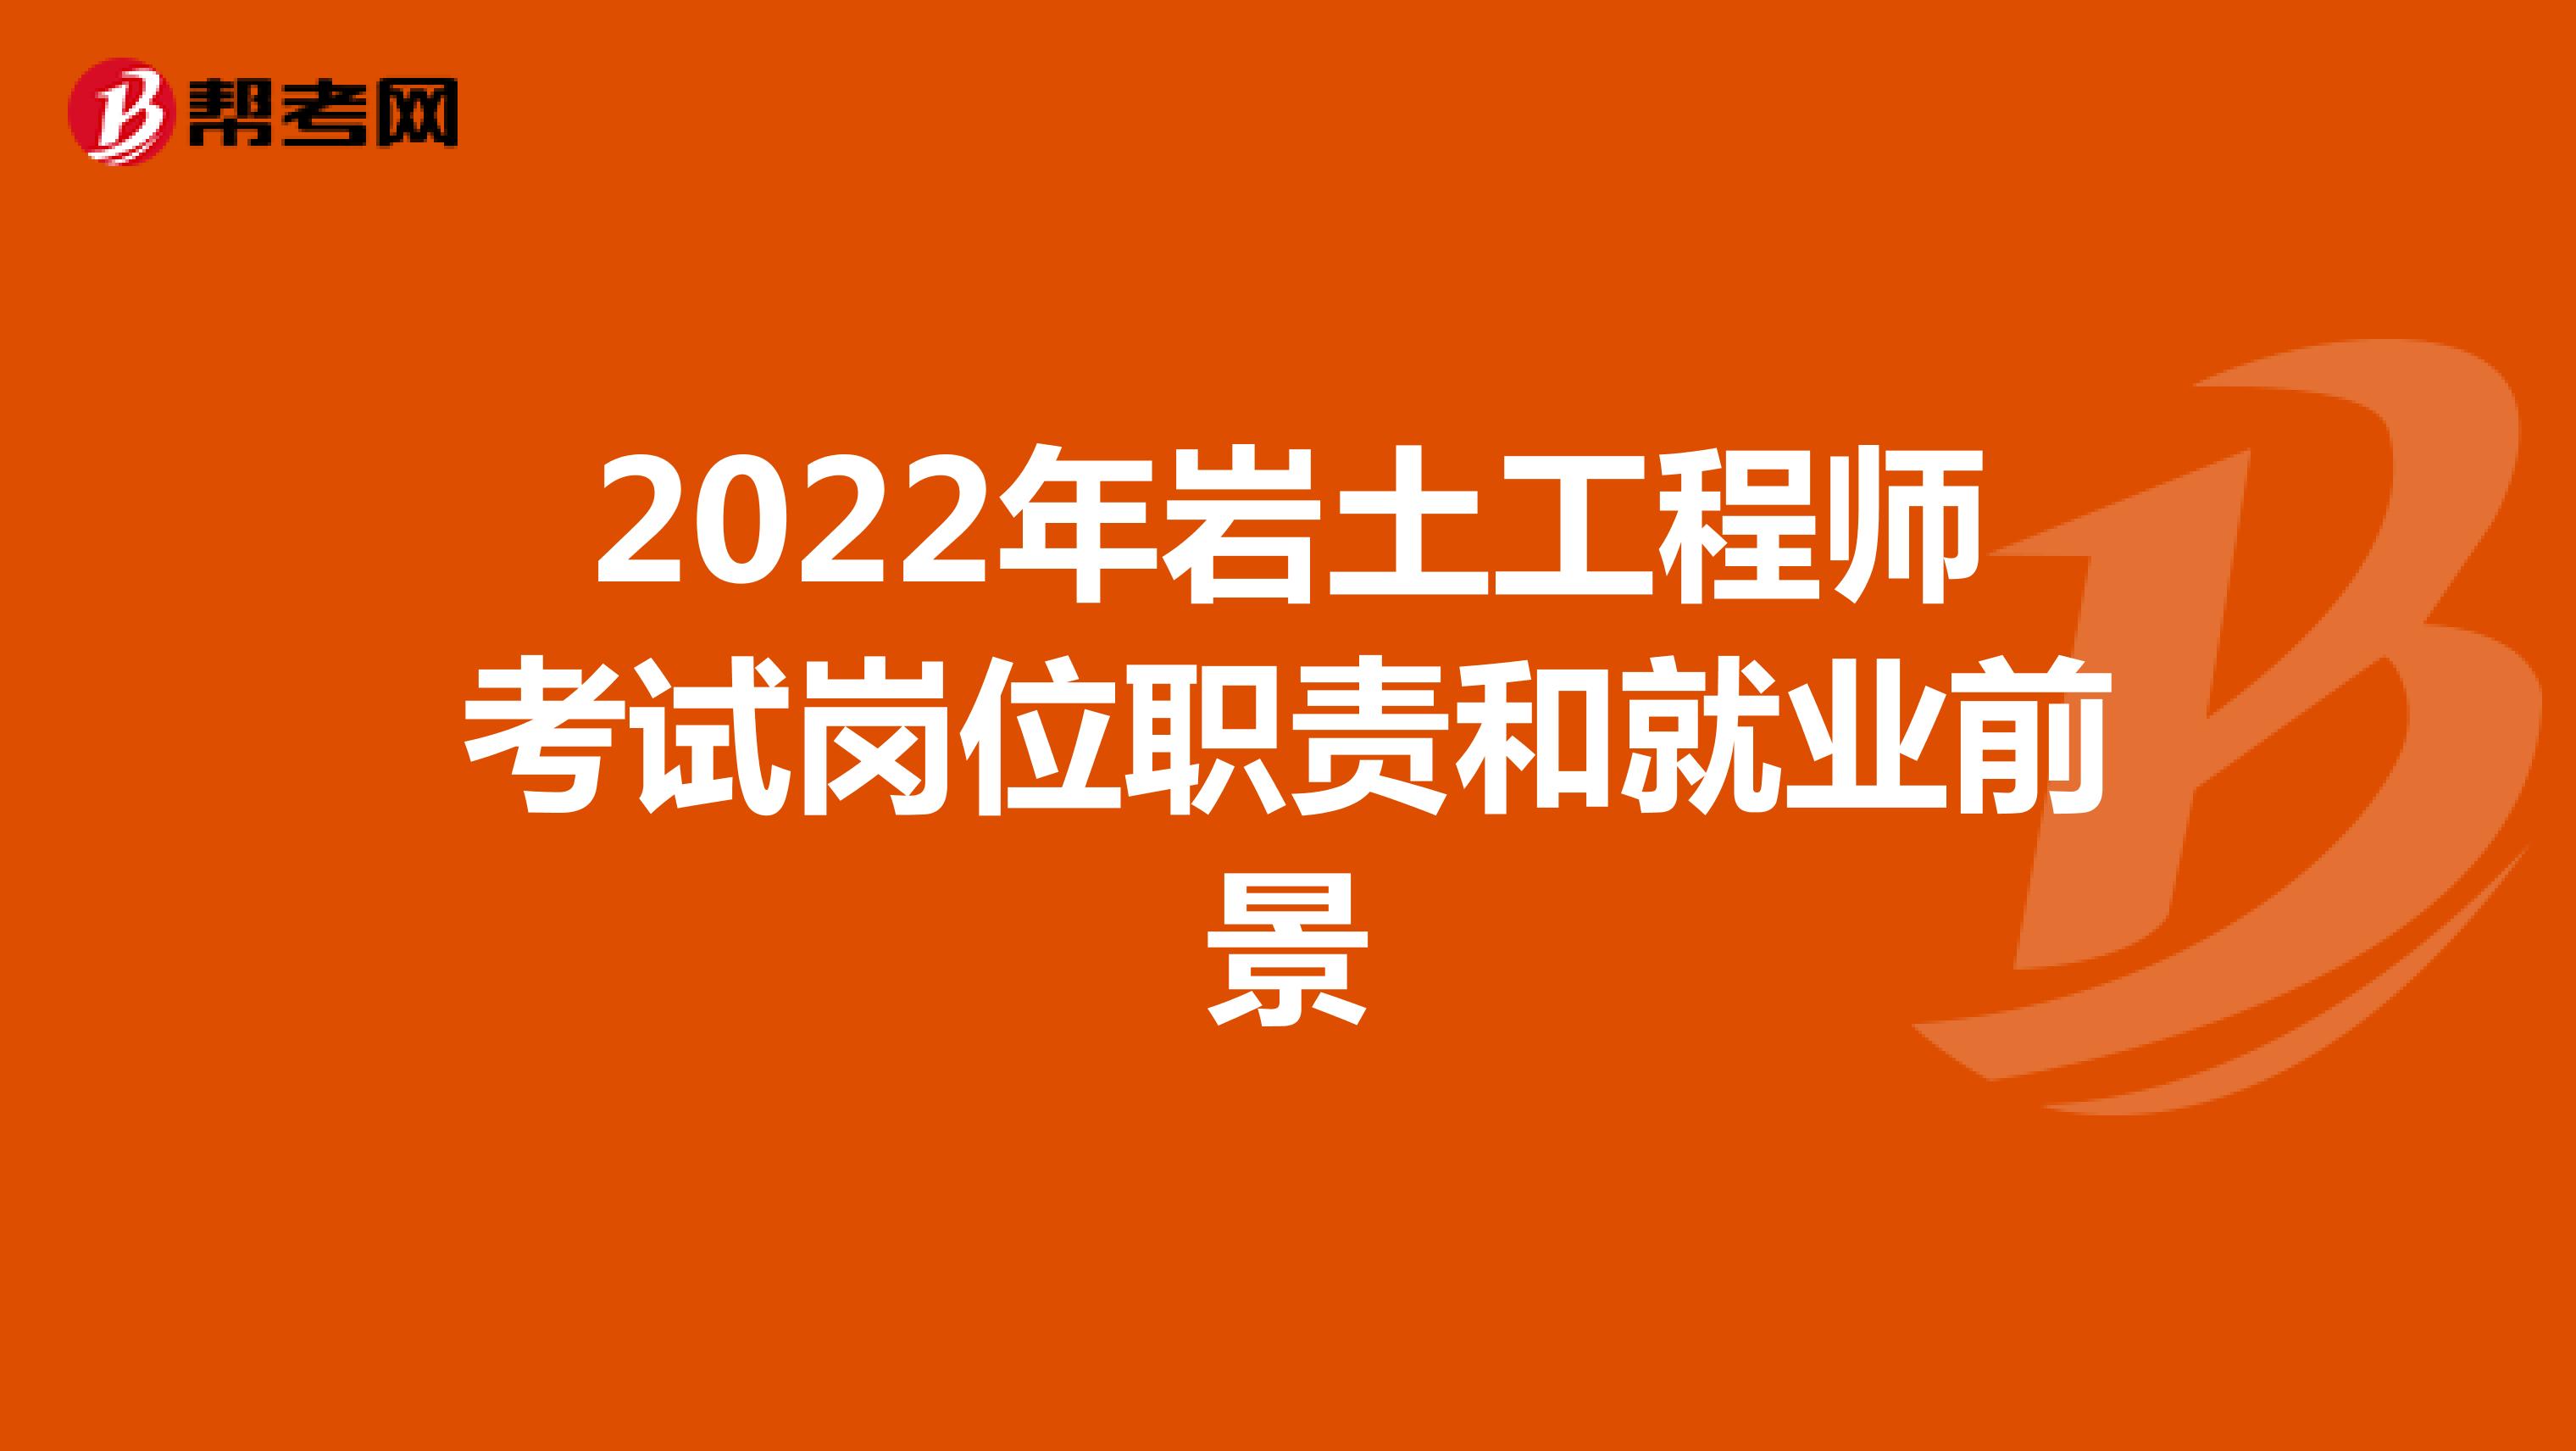 2022年岩土工程师考试岗位职责和就业前景